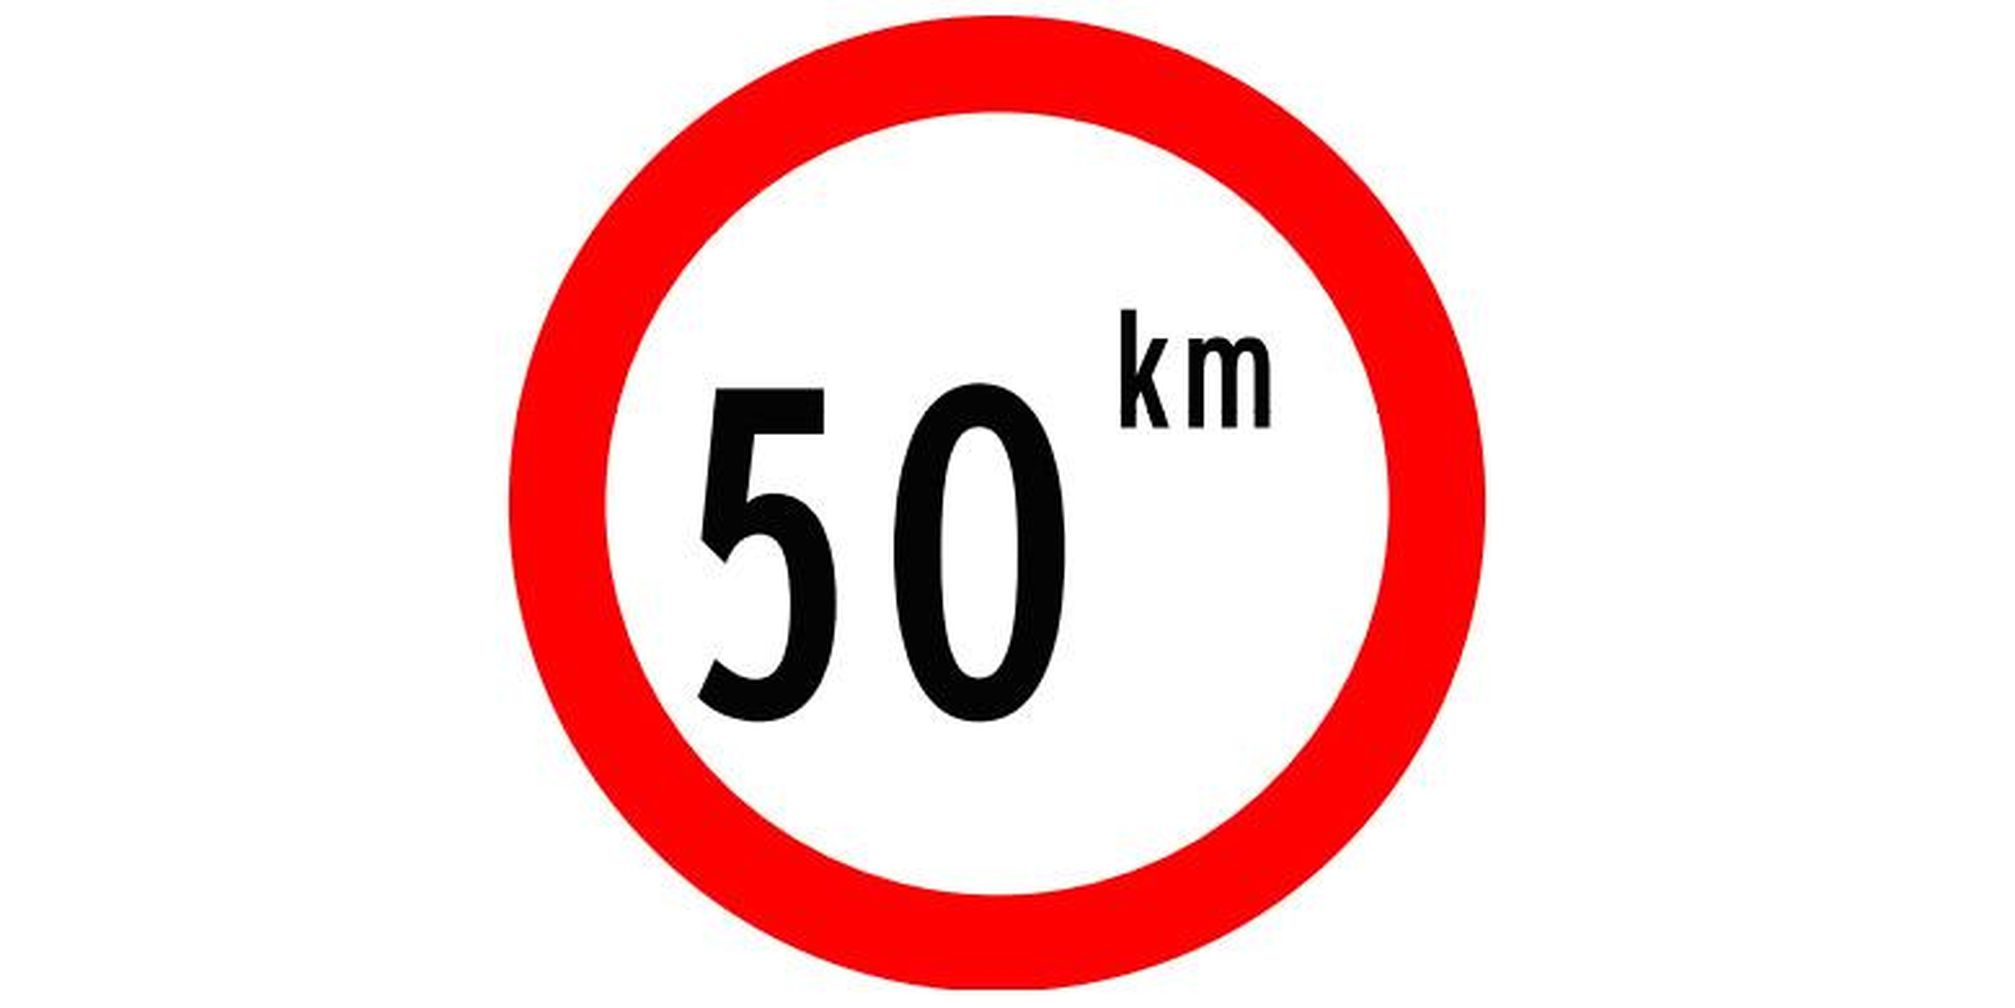 Rambu ini berarti kecepatan maksimum kendaraan dilarang lebih dari 50 kpj.